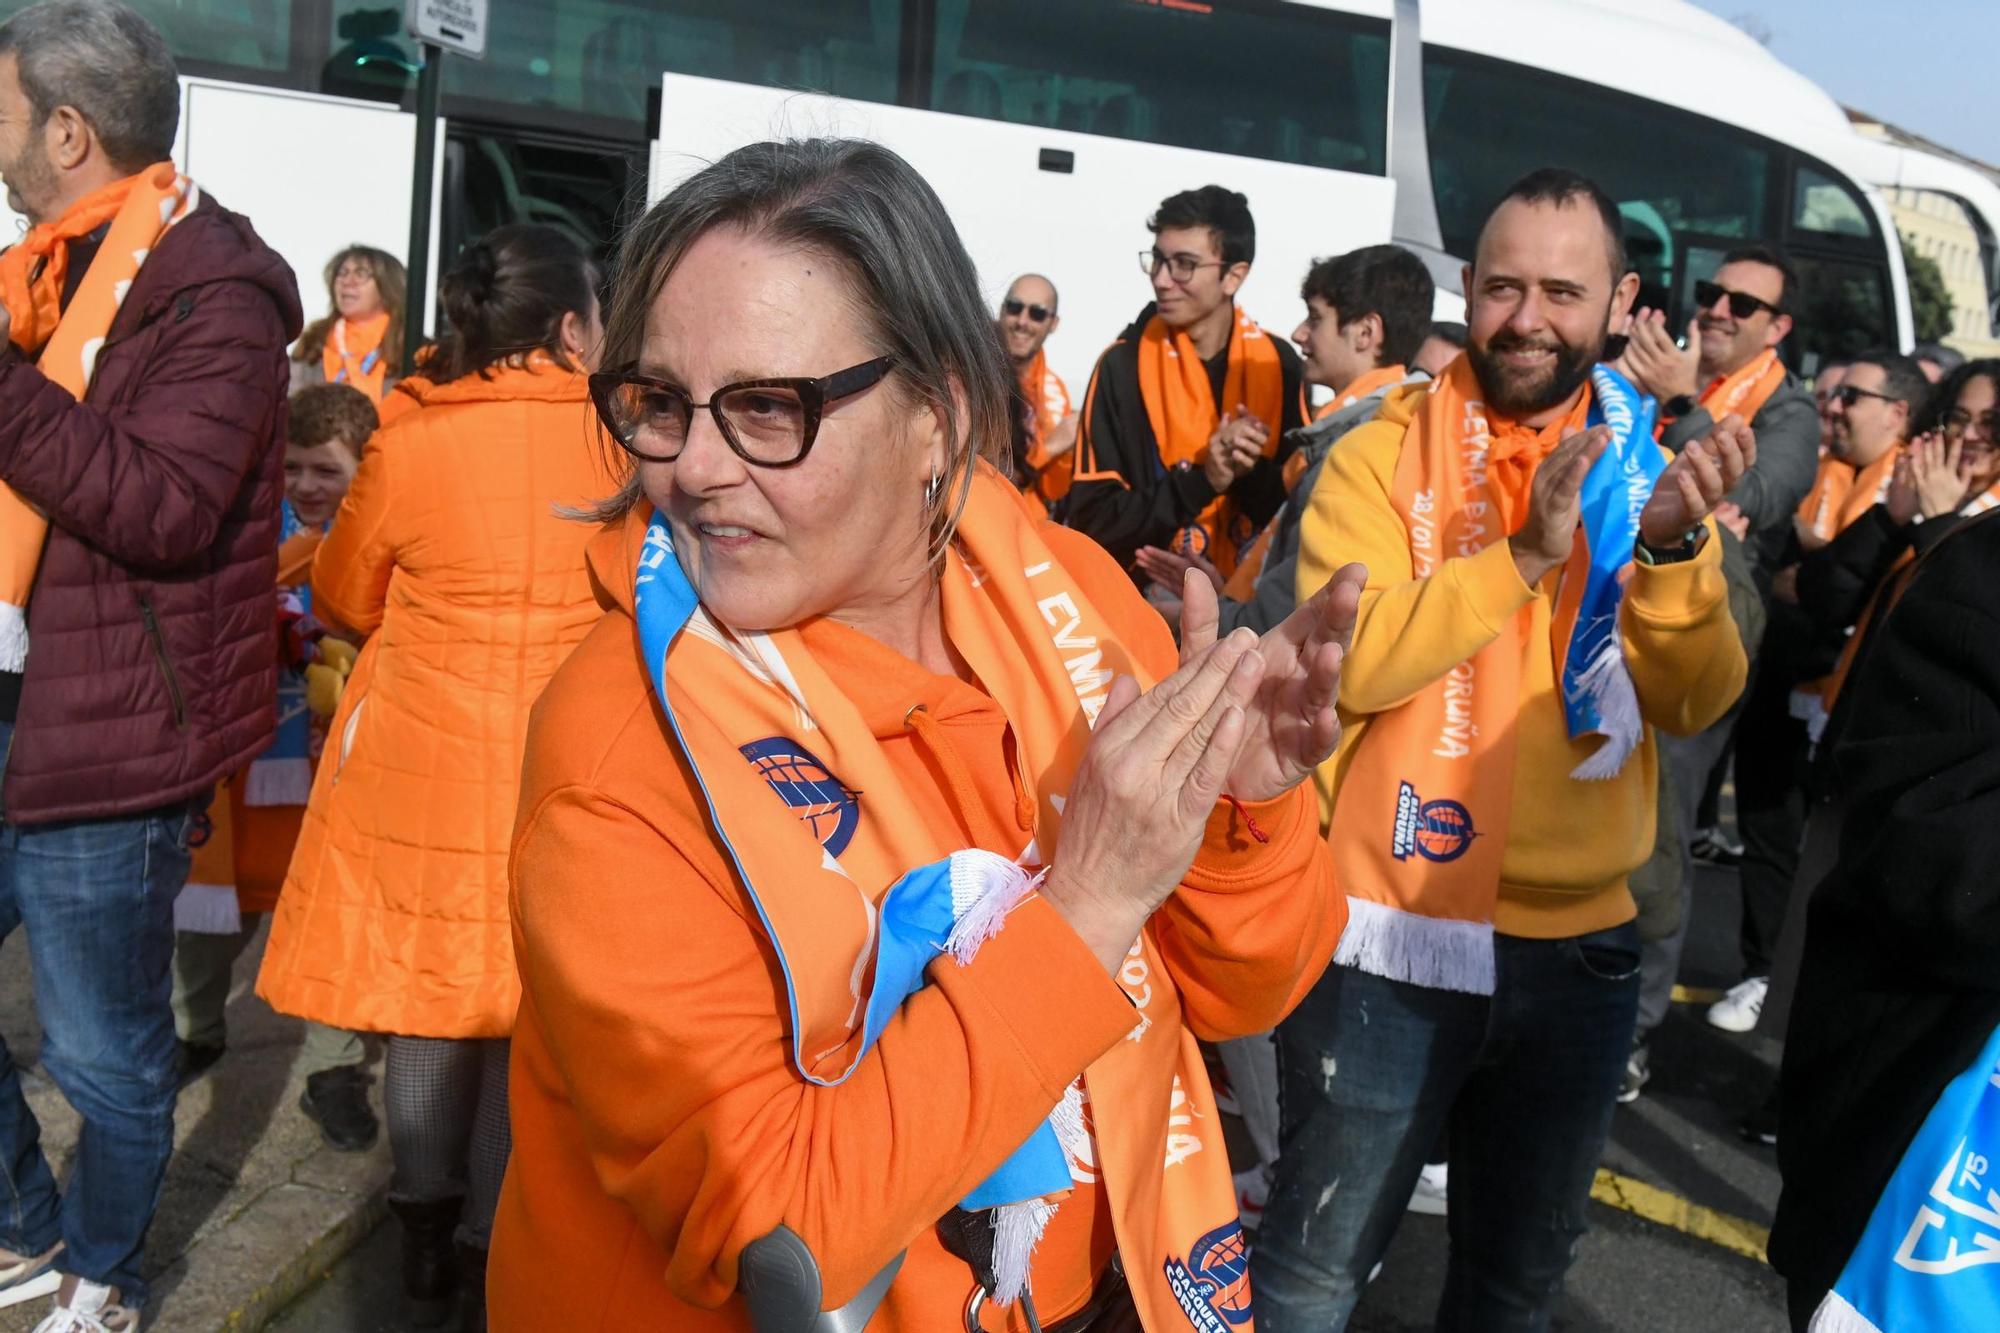 La Marea Naranja ya va camino de Madrid para animar al Leyma en la Copa de la Princesa